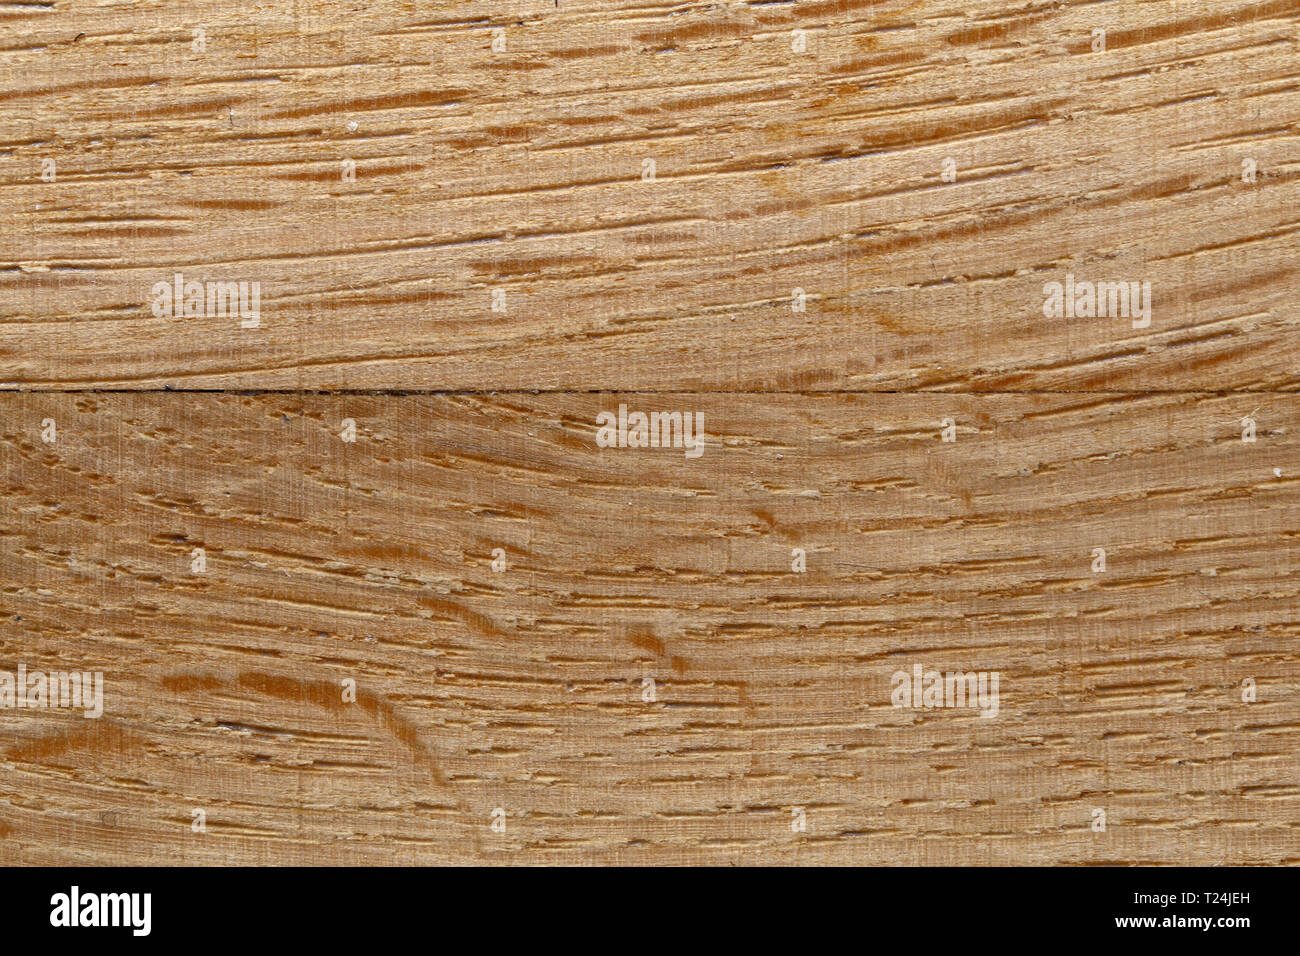 Closeup texture di un marrone con pavimento in legno. Dettagli della bella e vivace fino a colori di terra. N. persone. Immagine a colori con obiettivo macro. Foto Stock